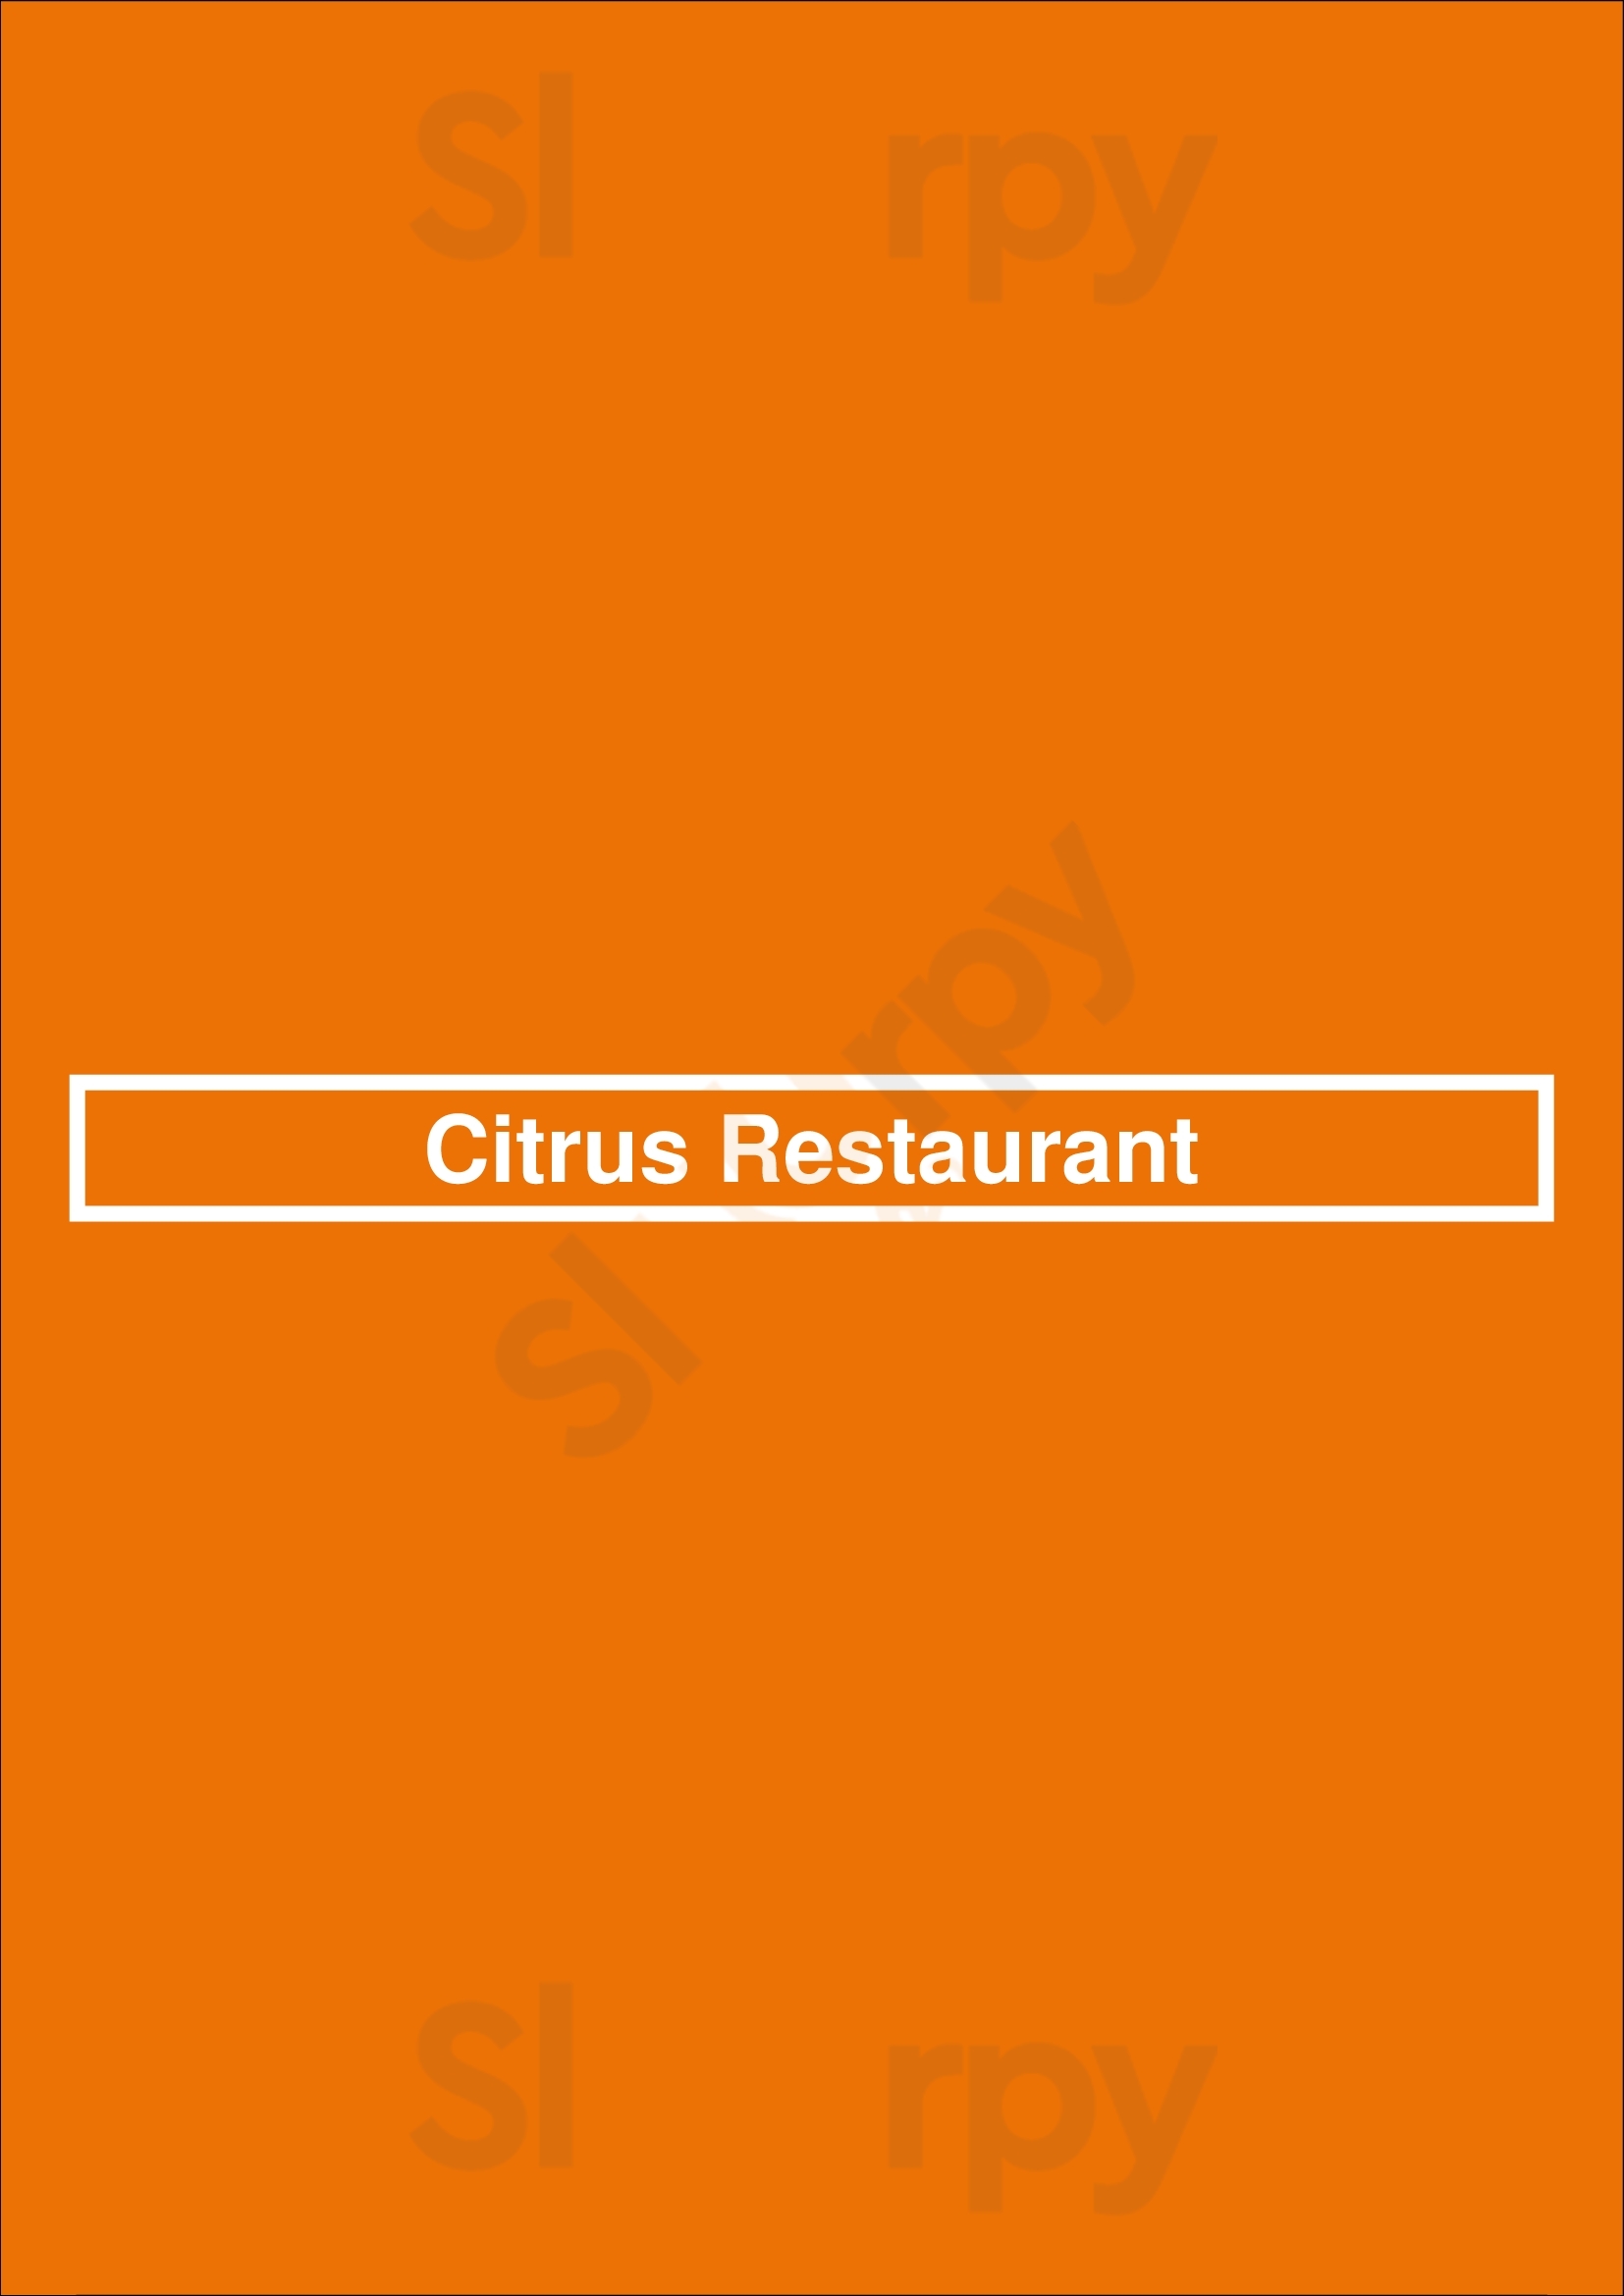 Citrus Restaurant Lisboa Menu - 1